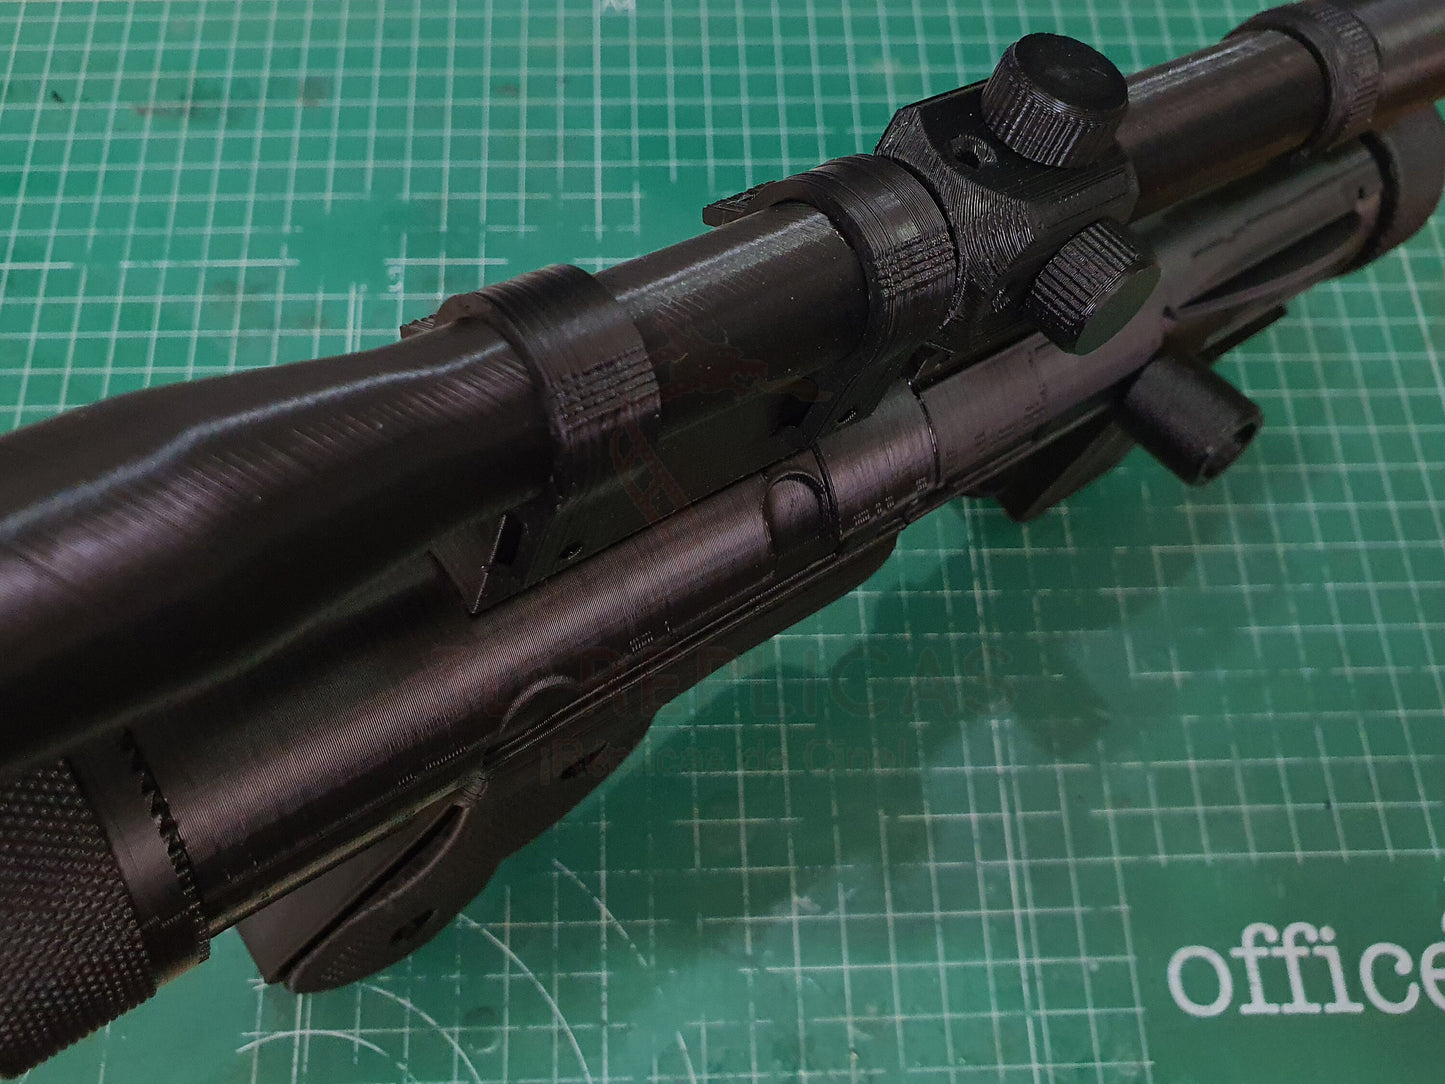 Star Wars SE-14r Death Trooper Blaster UNIBODY Version Cosplay Gun Pistol